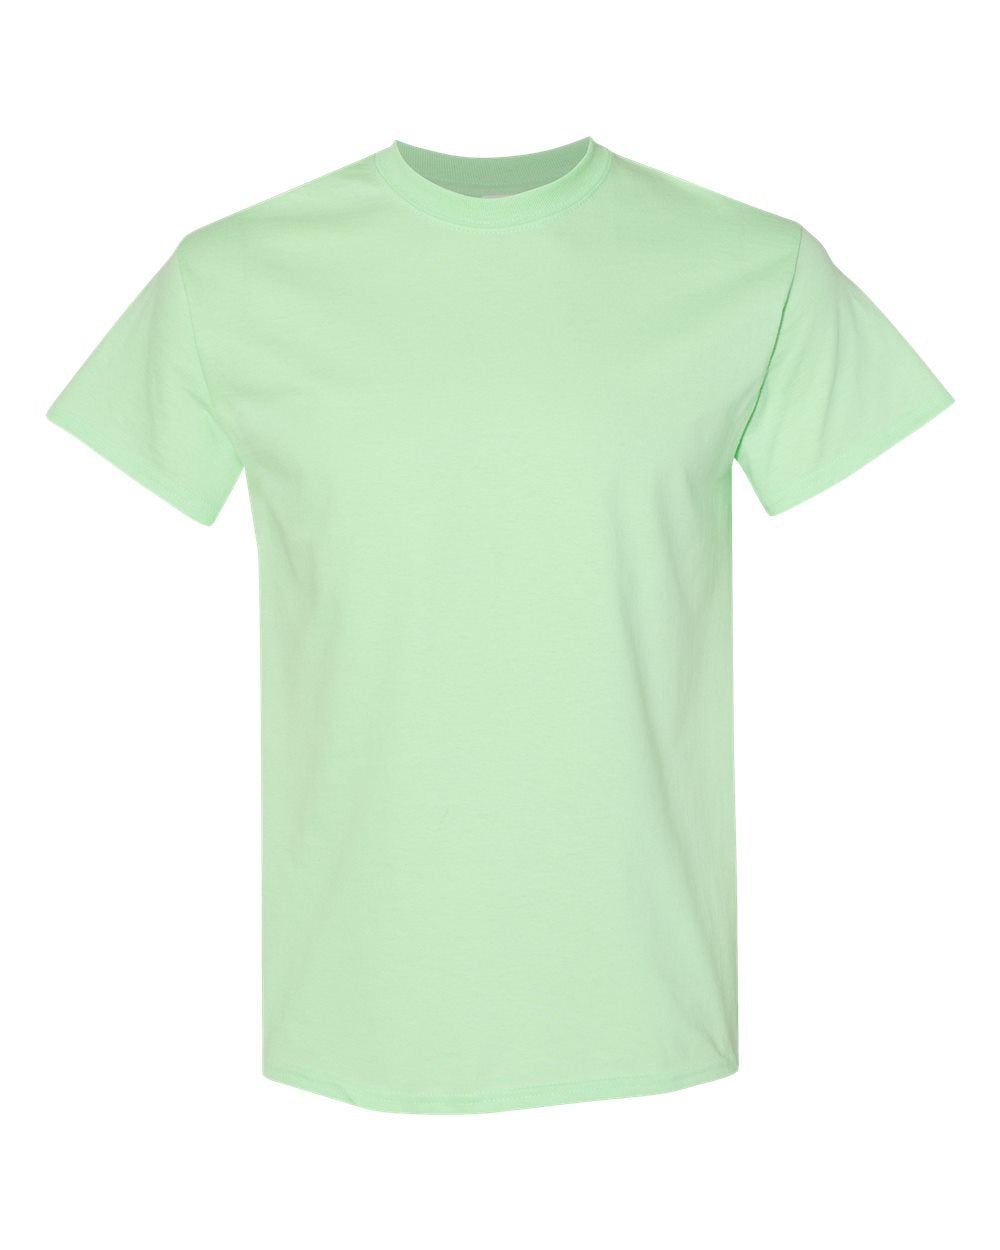 Gildan 5000 Adult Shirt - Large